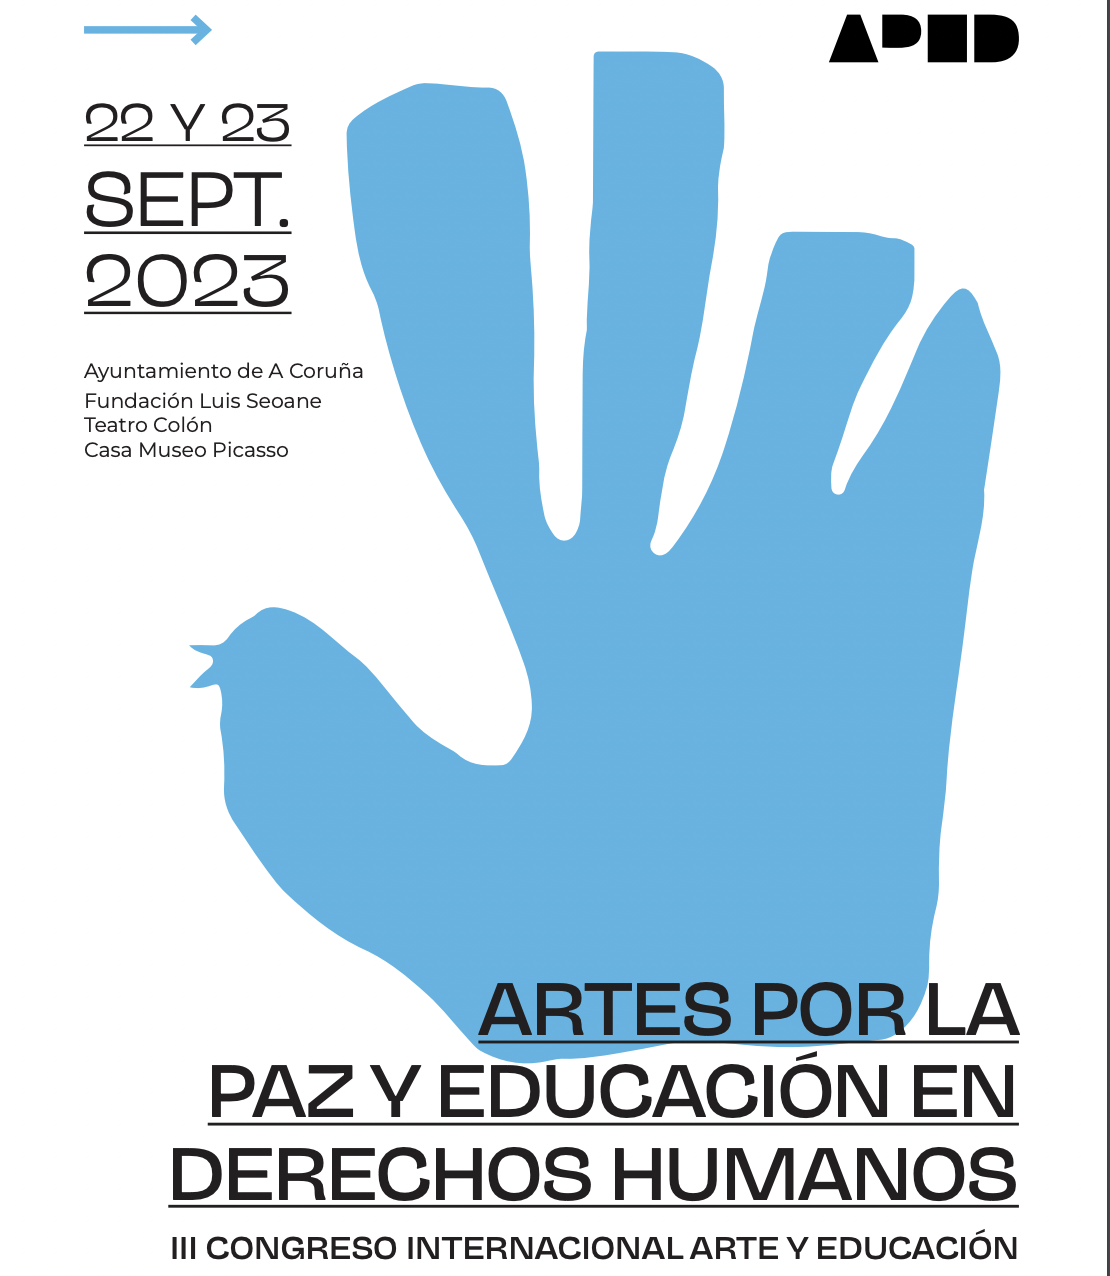 Participación conferencia de clausura en el III Congreso de Artes por la Paz y la Educación en derechos humanos. 